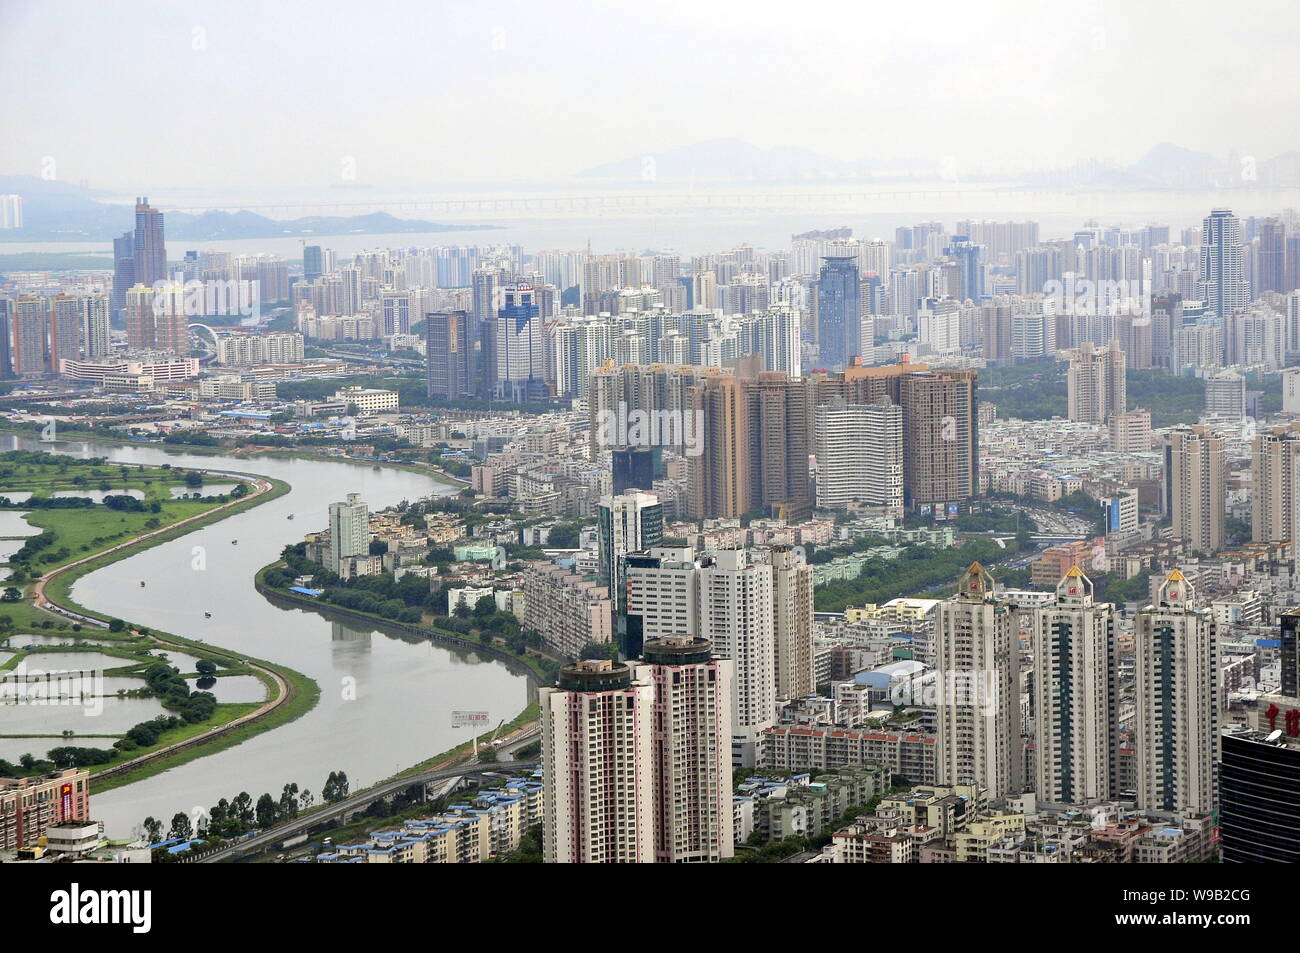 Anzeigen von Clustern von Wolkenkratzern, Hochhaus Büro- und Wohngebäuden Mehrfamilienhäusern in Shenzhen City, South China Guangdong Provinz, 11. August 201 Stockfoto